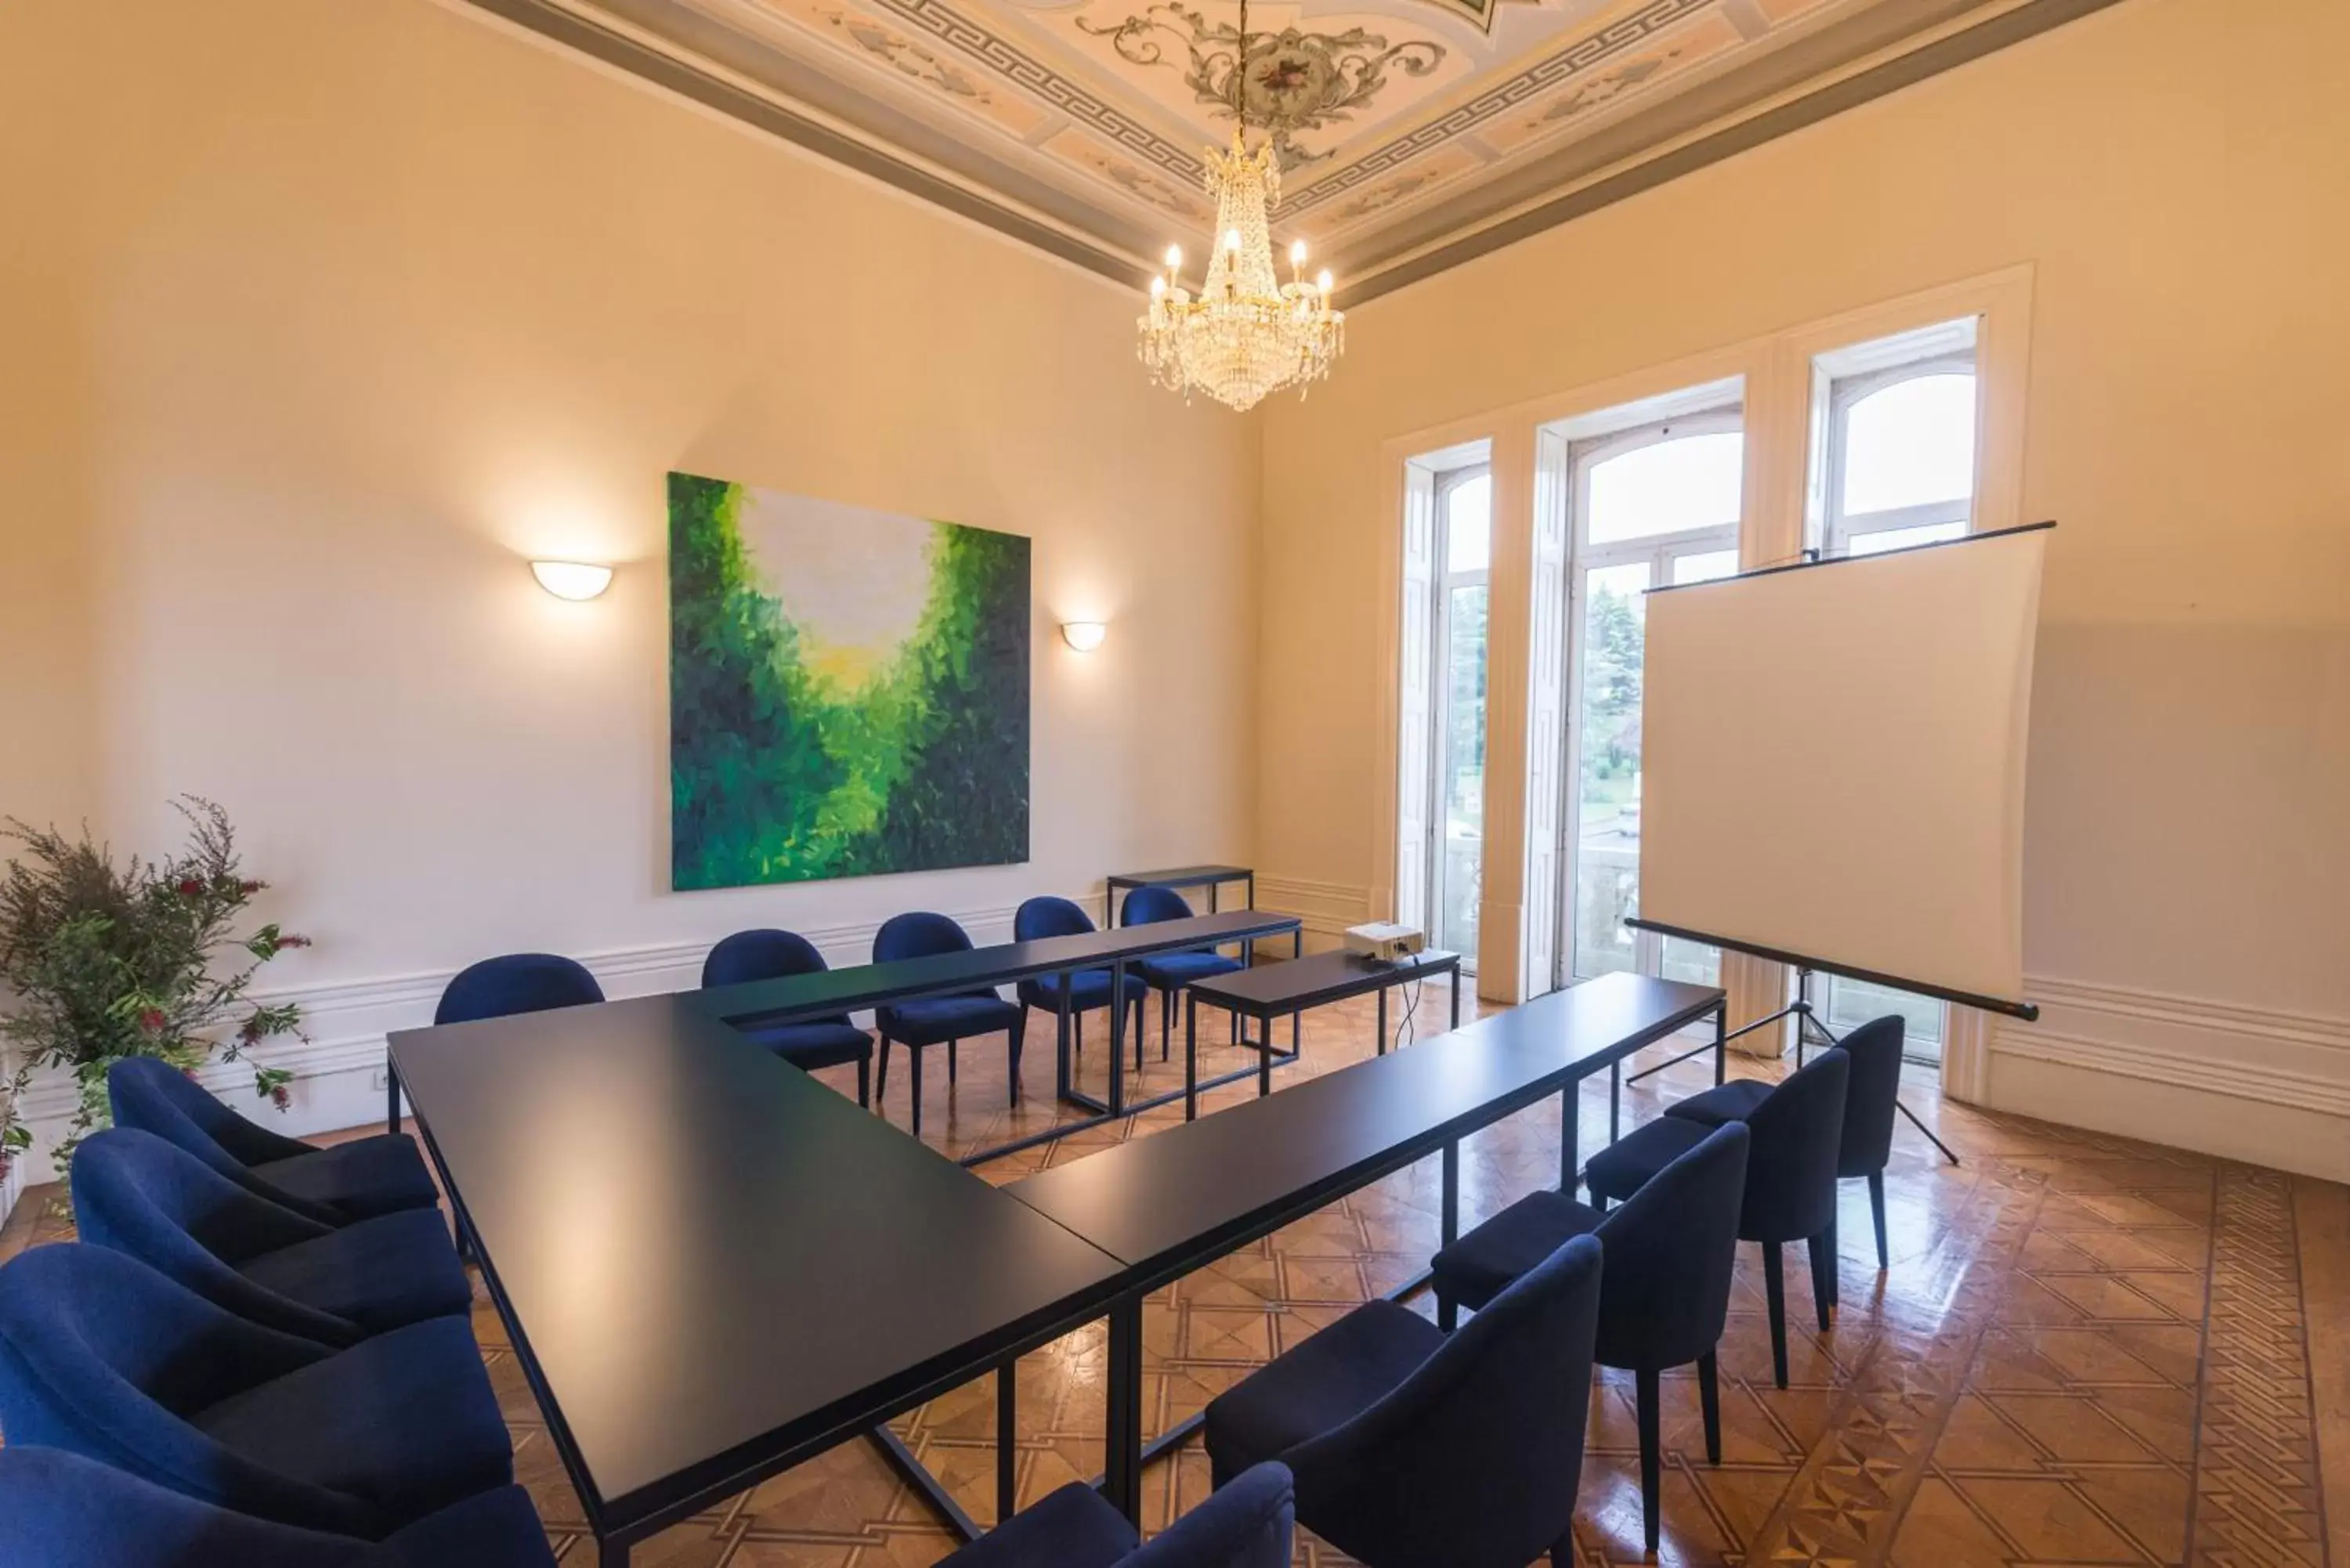 Meeting/conference room in Hotel Villa Garden Braga